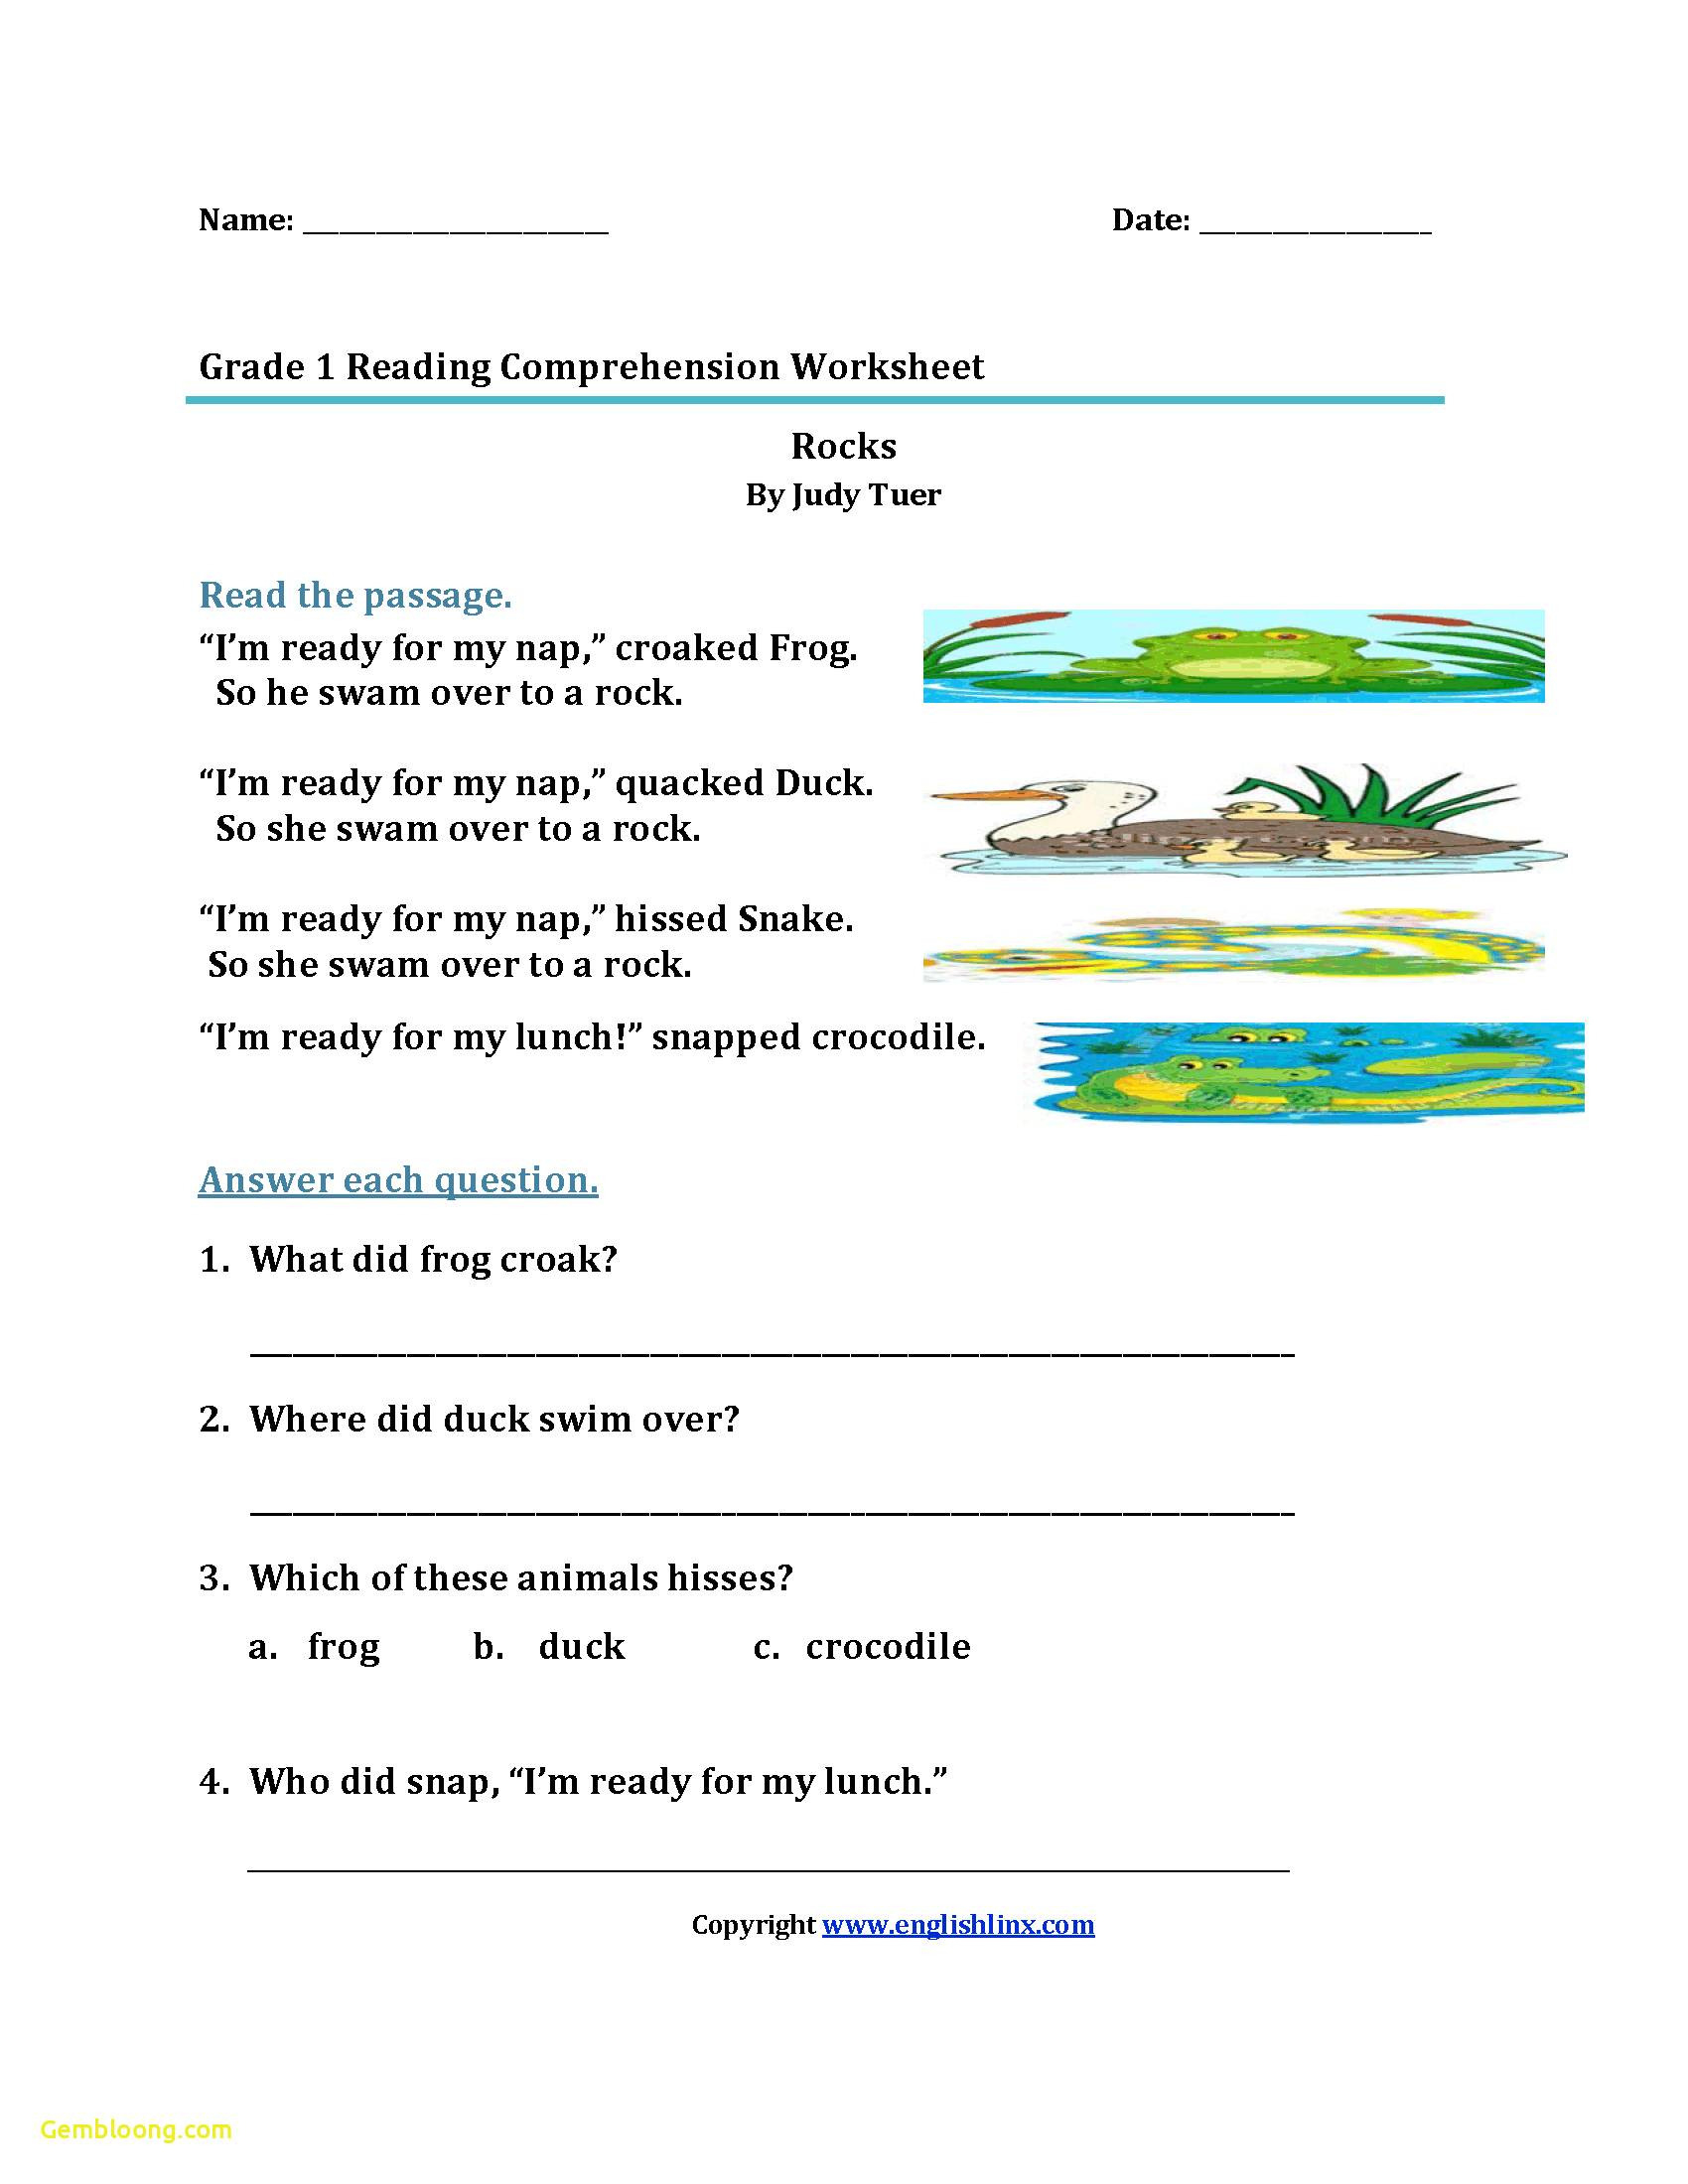 Reading Comprehension Worksheets For 1St Grade